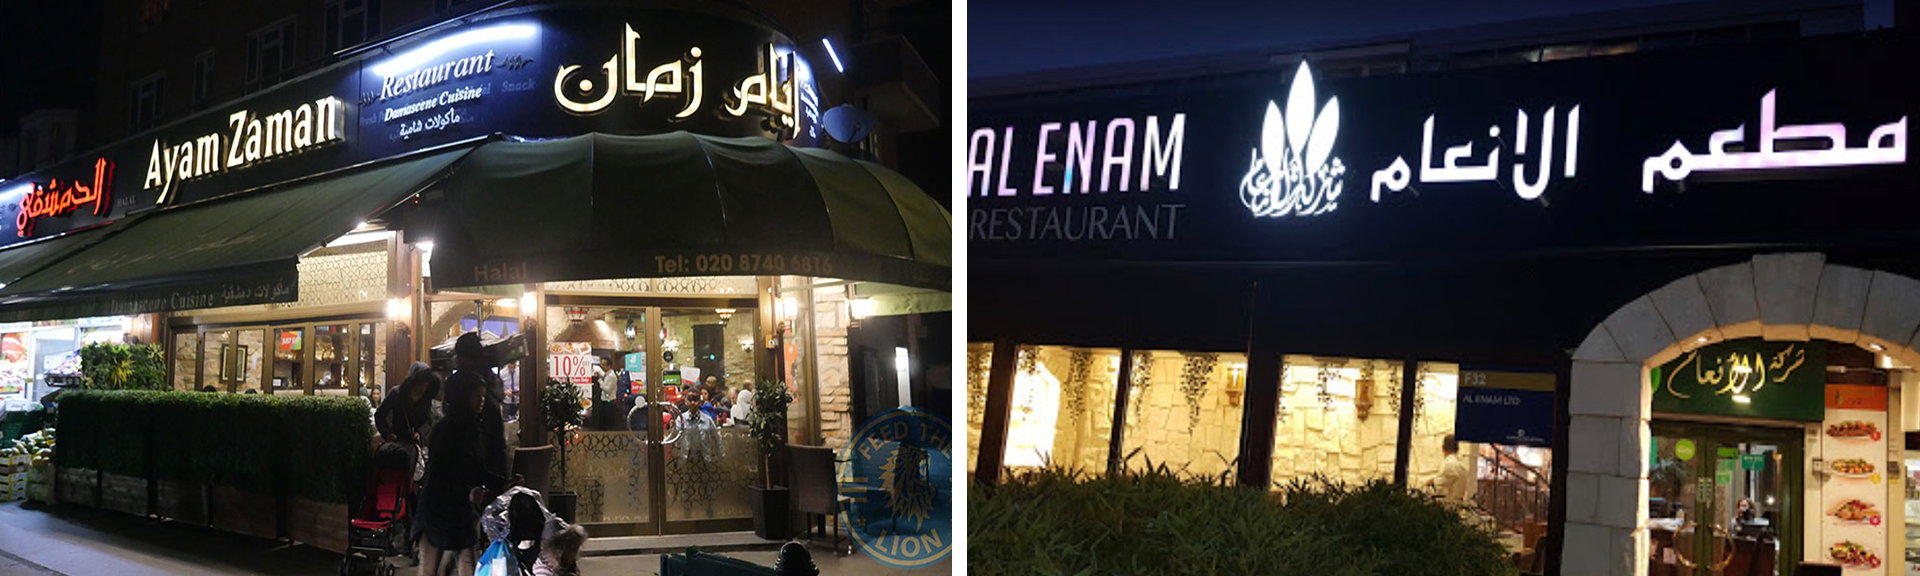 مطعمي أيام زمان و الأنعام أفضل المطاعم العربية في لندن لعام 2019 بحسب استطلاع أرابيسك! 